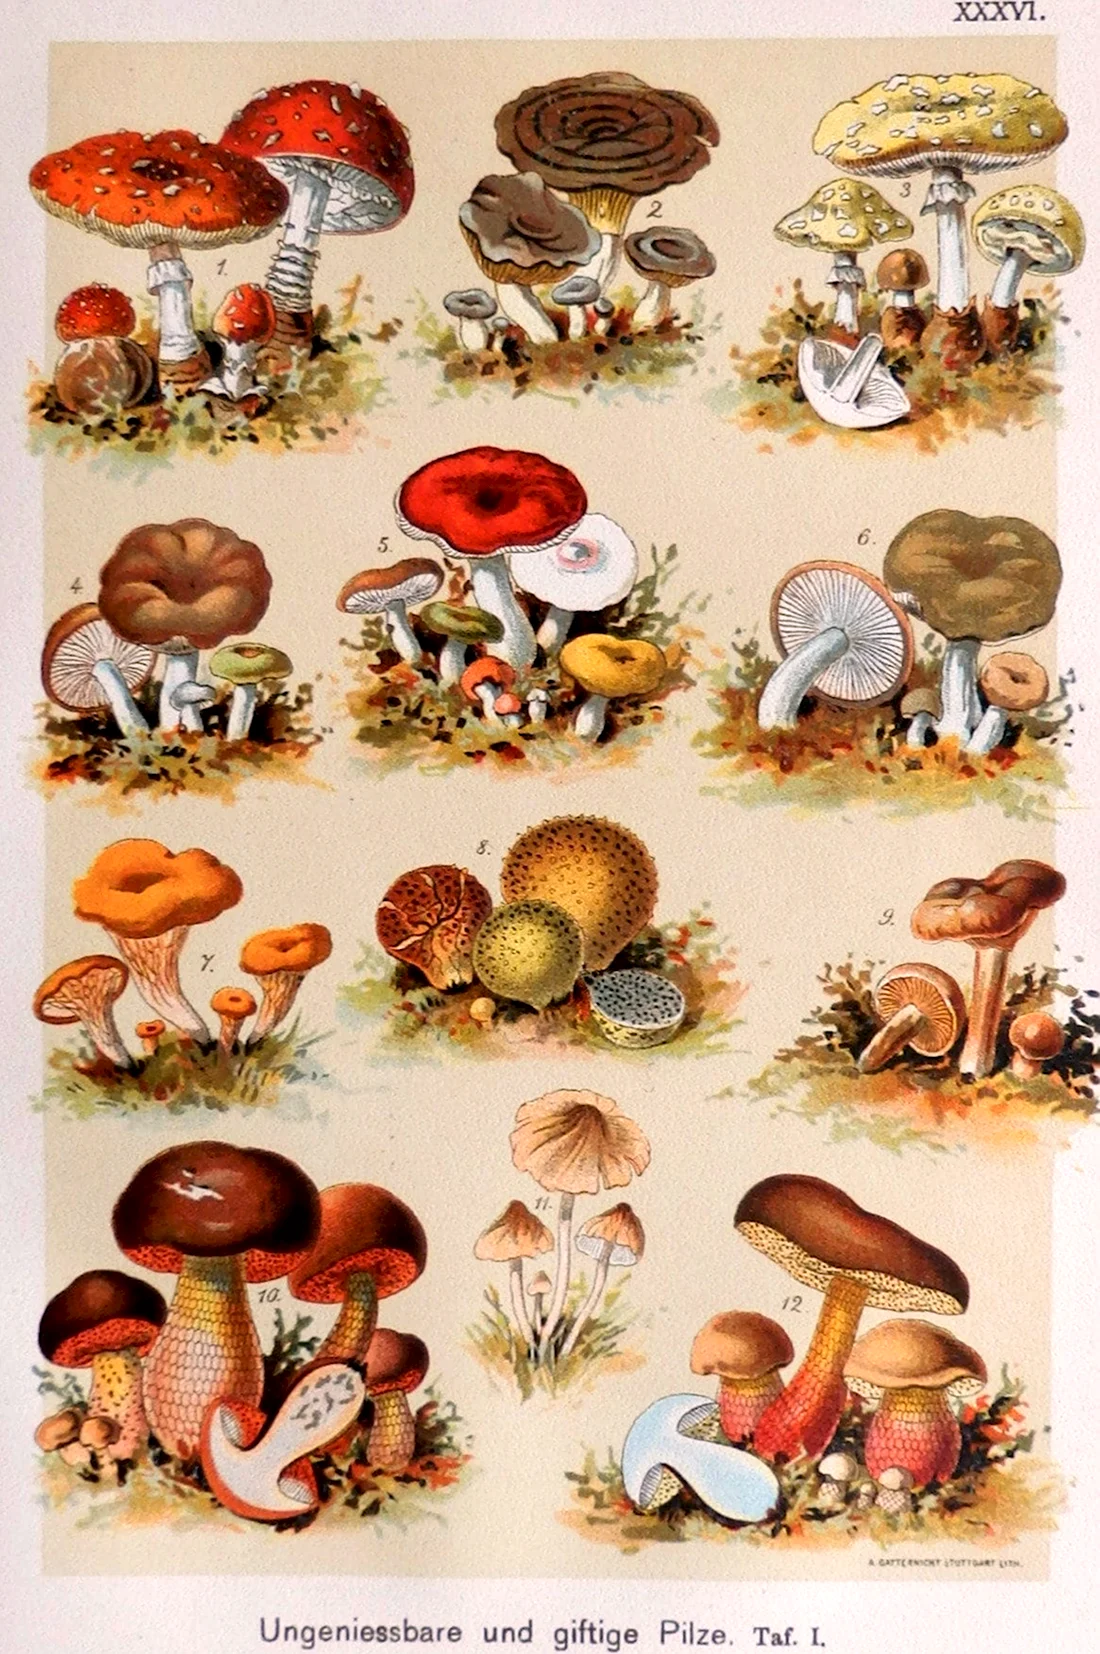 Постеры с видами грибов